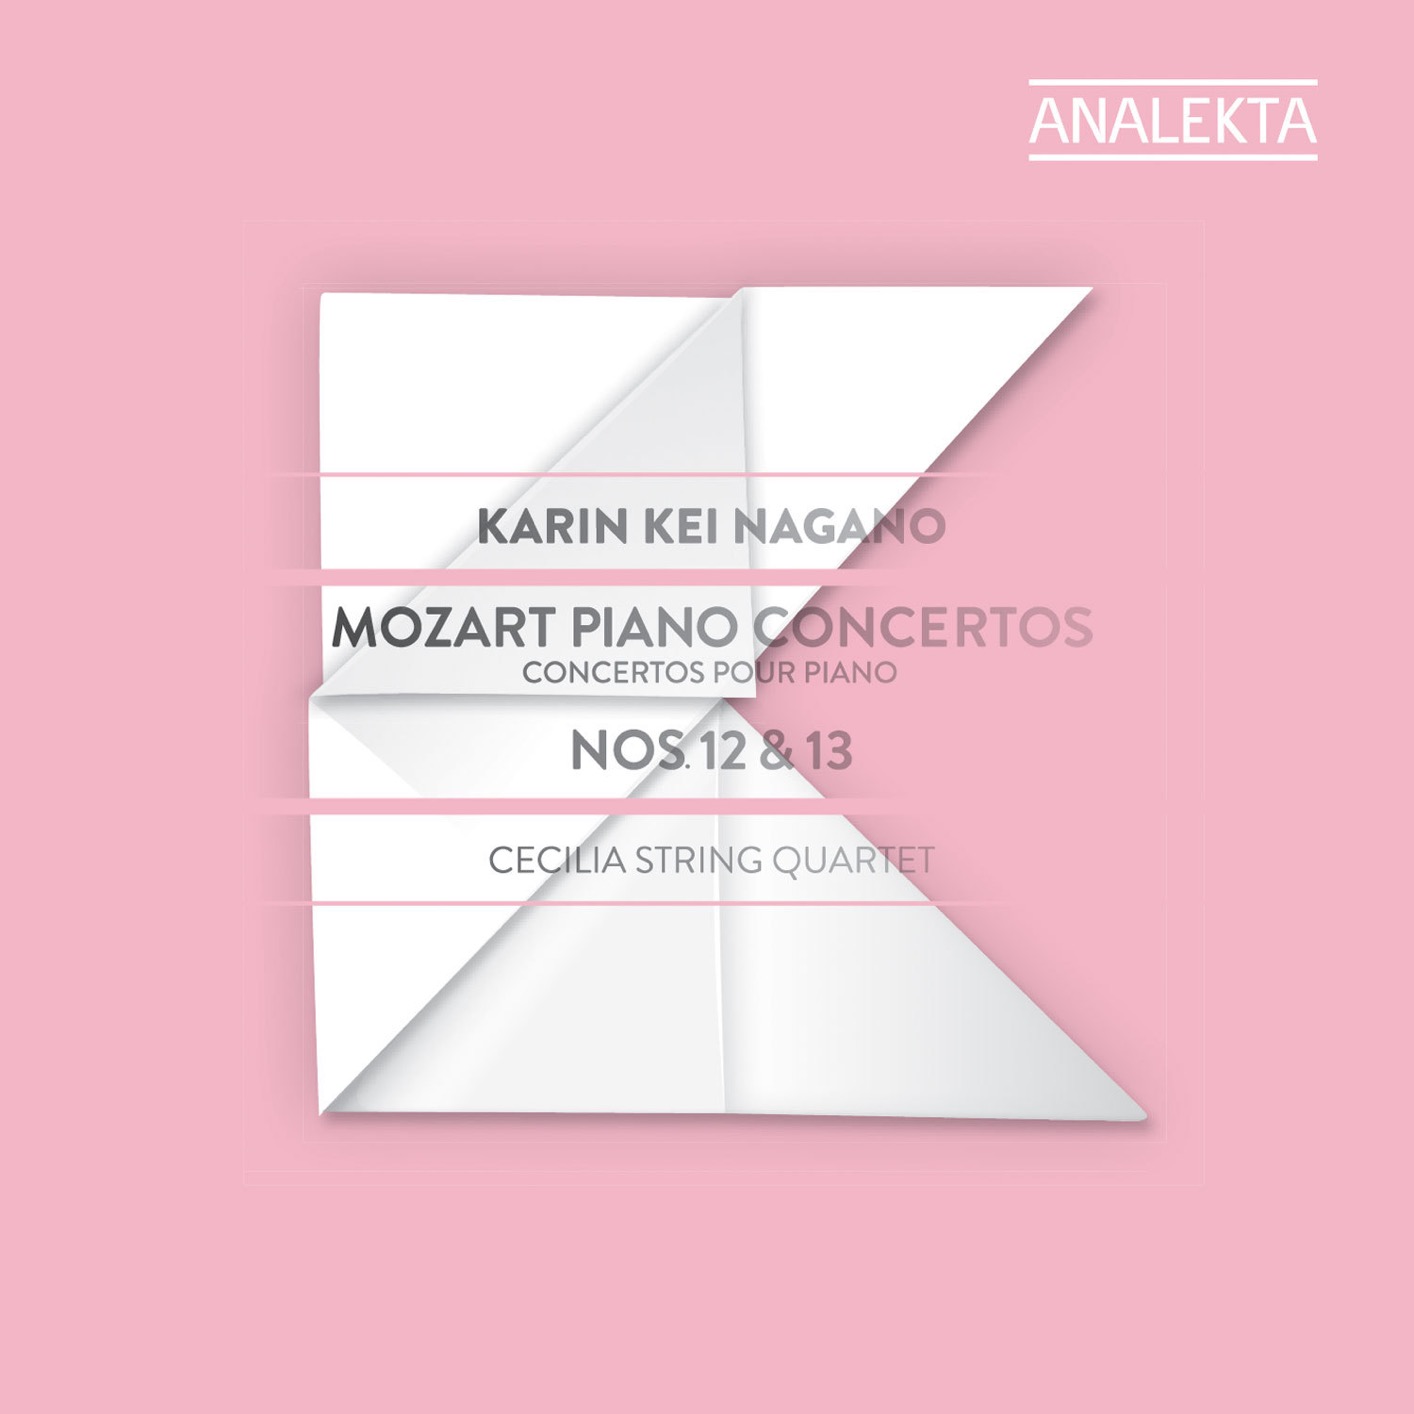 Karin Kei Nagano - Mozart: Piano Concertos Nos. 12 & 13 (2014/2019) [FLAC 24bit/192kHz]